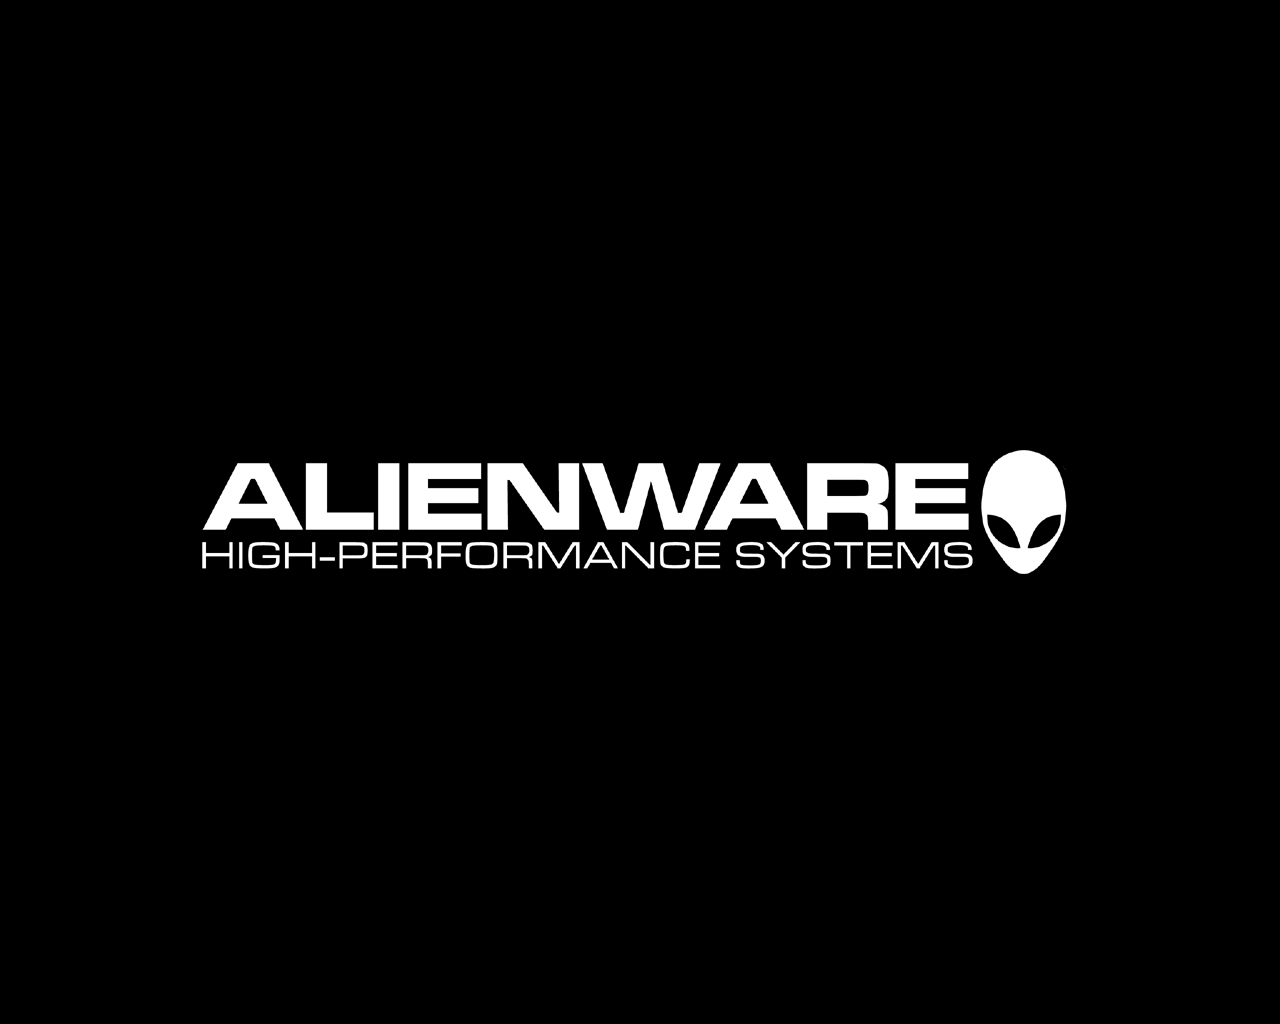 Alienware Negro Blanco Fondos De Pantalla